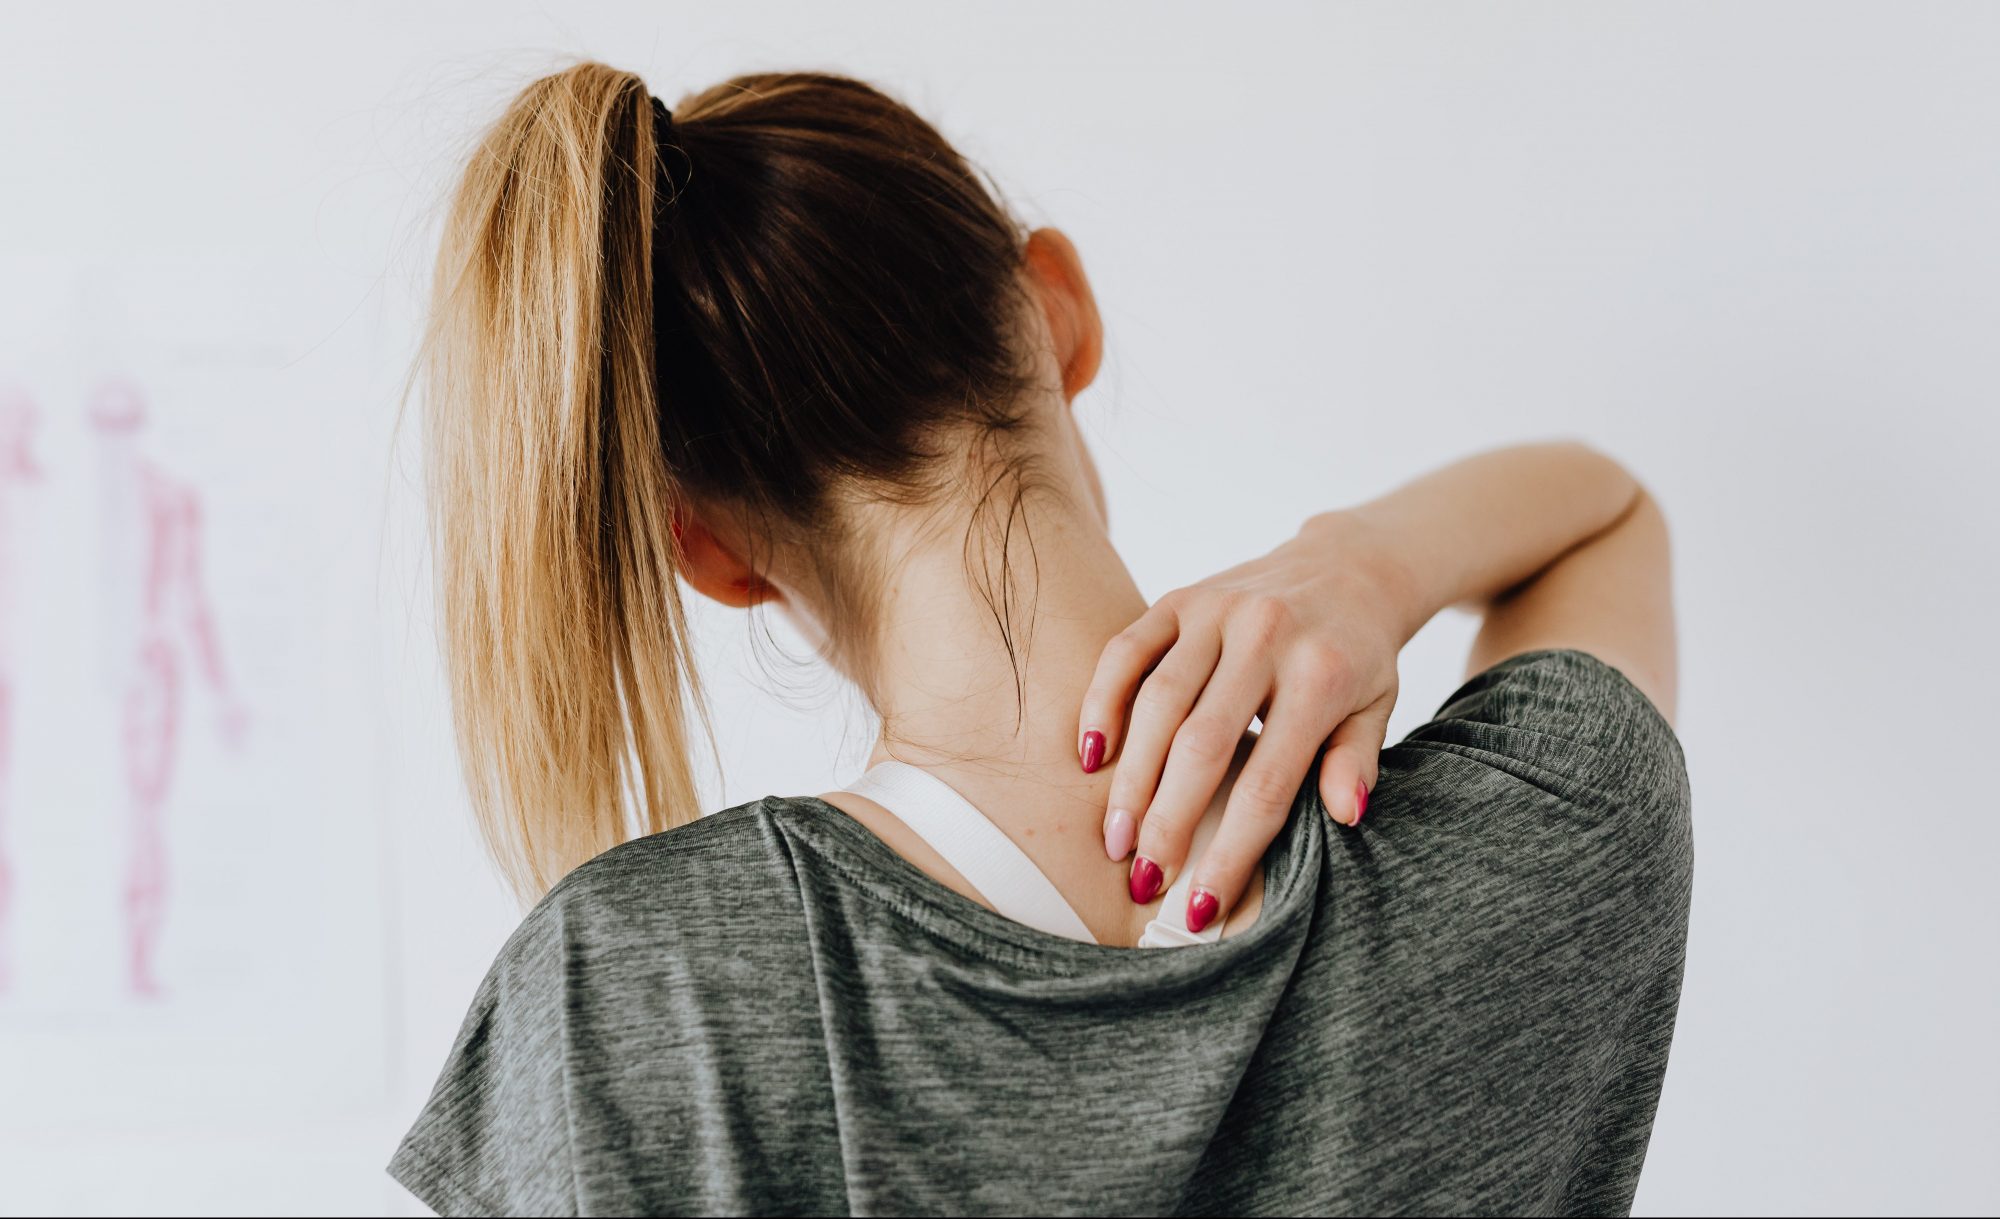 Η Νο1 άσκηση για την ανακούφιση των πόνων του αυχένα Αυτό το πρόβλημα είναι εξαιρετικά κοινό ειδικά σε όσους κάνουν καθιστική εργασία, όμως υπάρχει λύση.